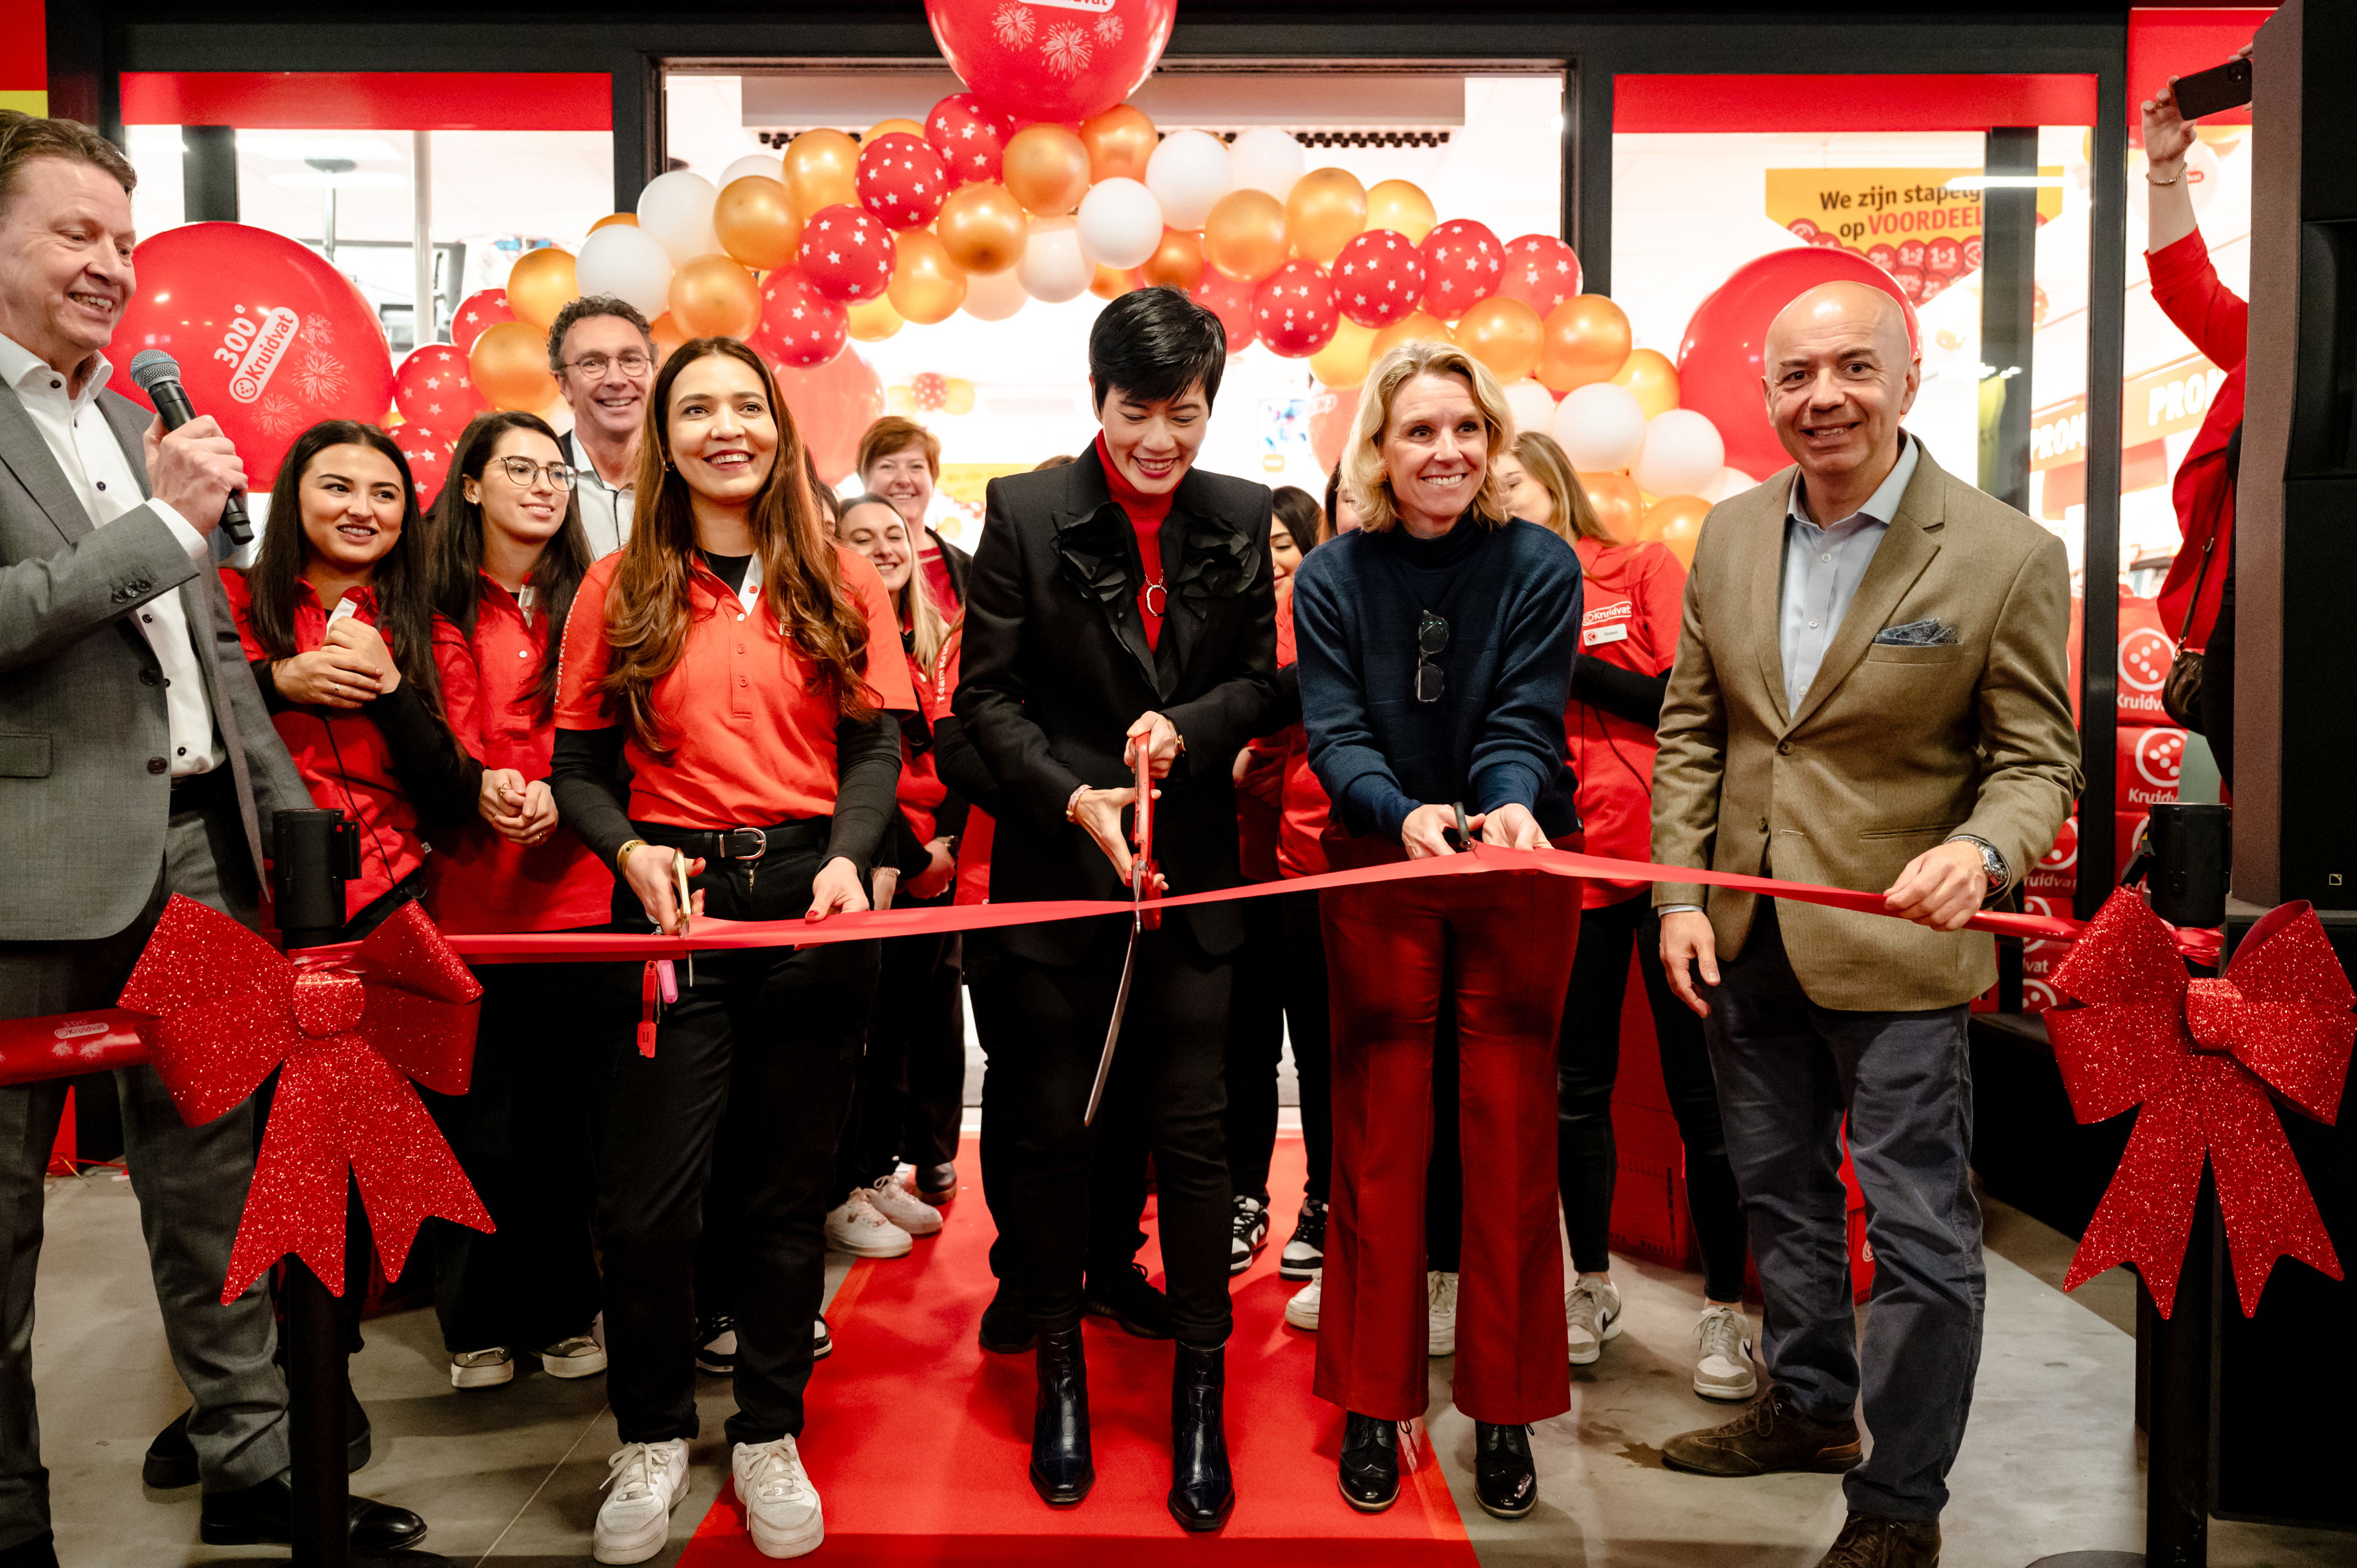 Kruidvat célèbre l’ouverture de son 300e magasin en Belgique